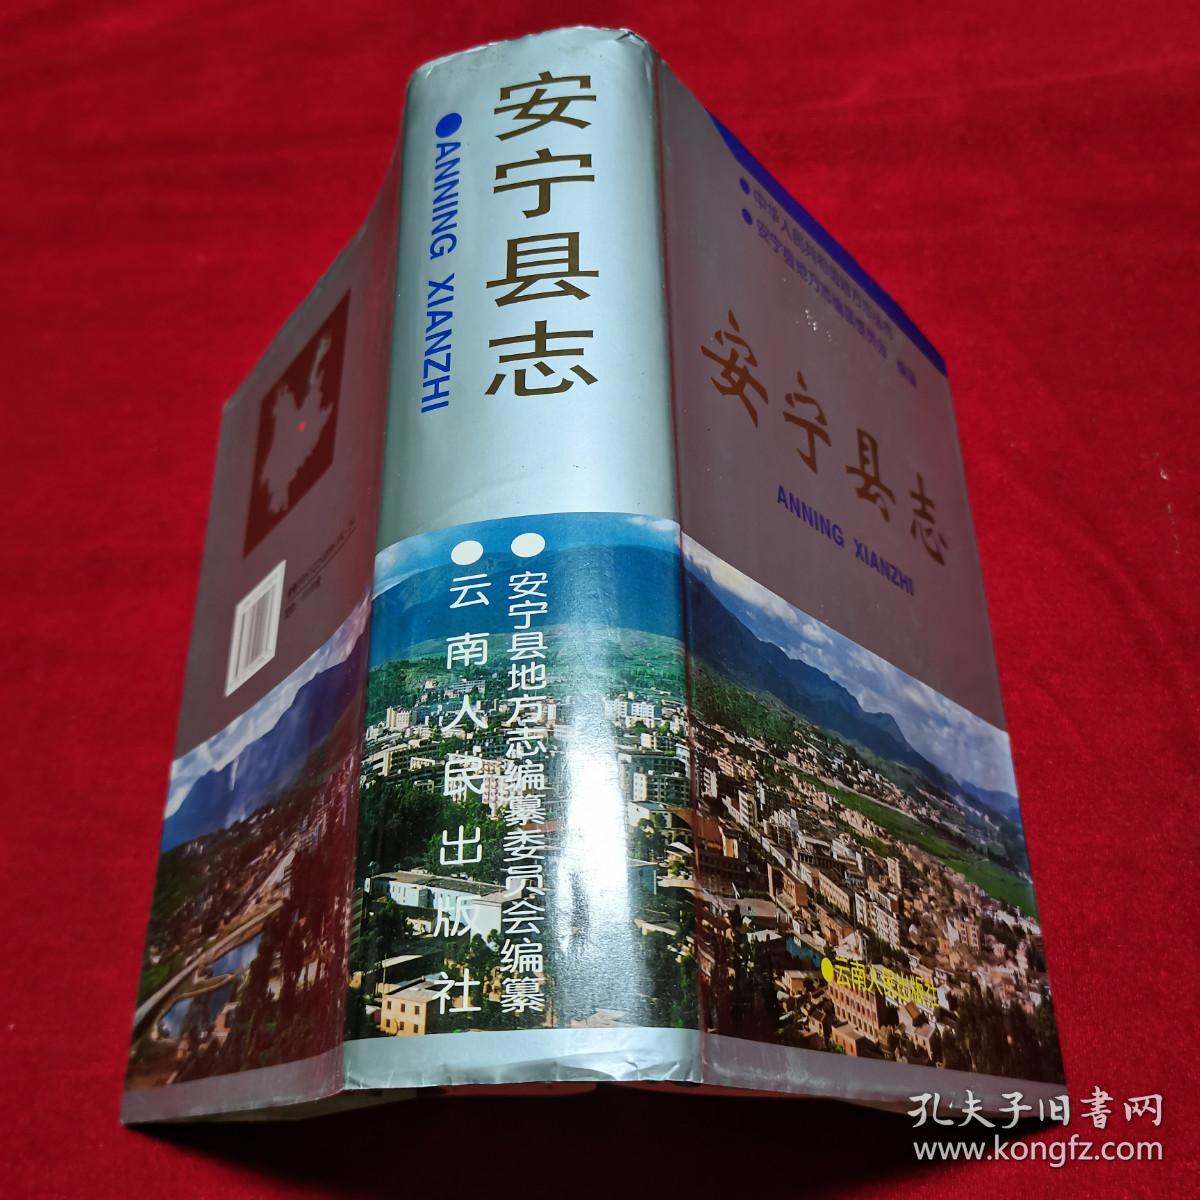 【安宁县志 +安宁县志 1989—1995】 2册合售